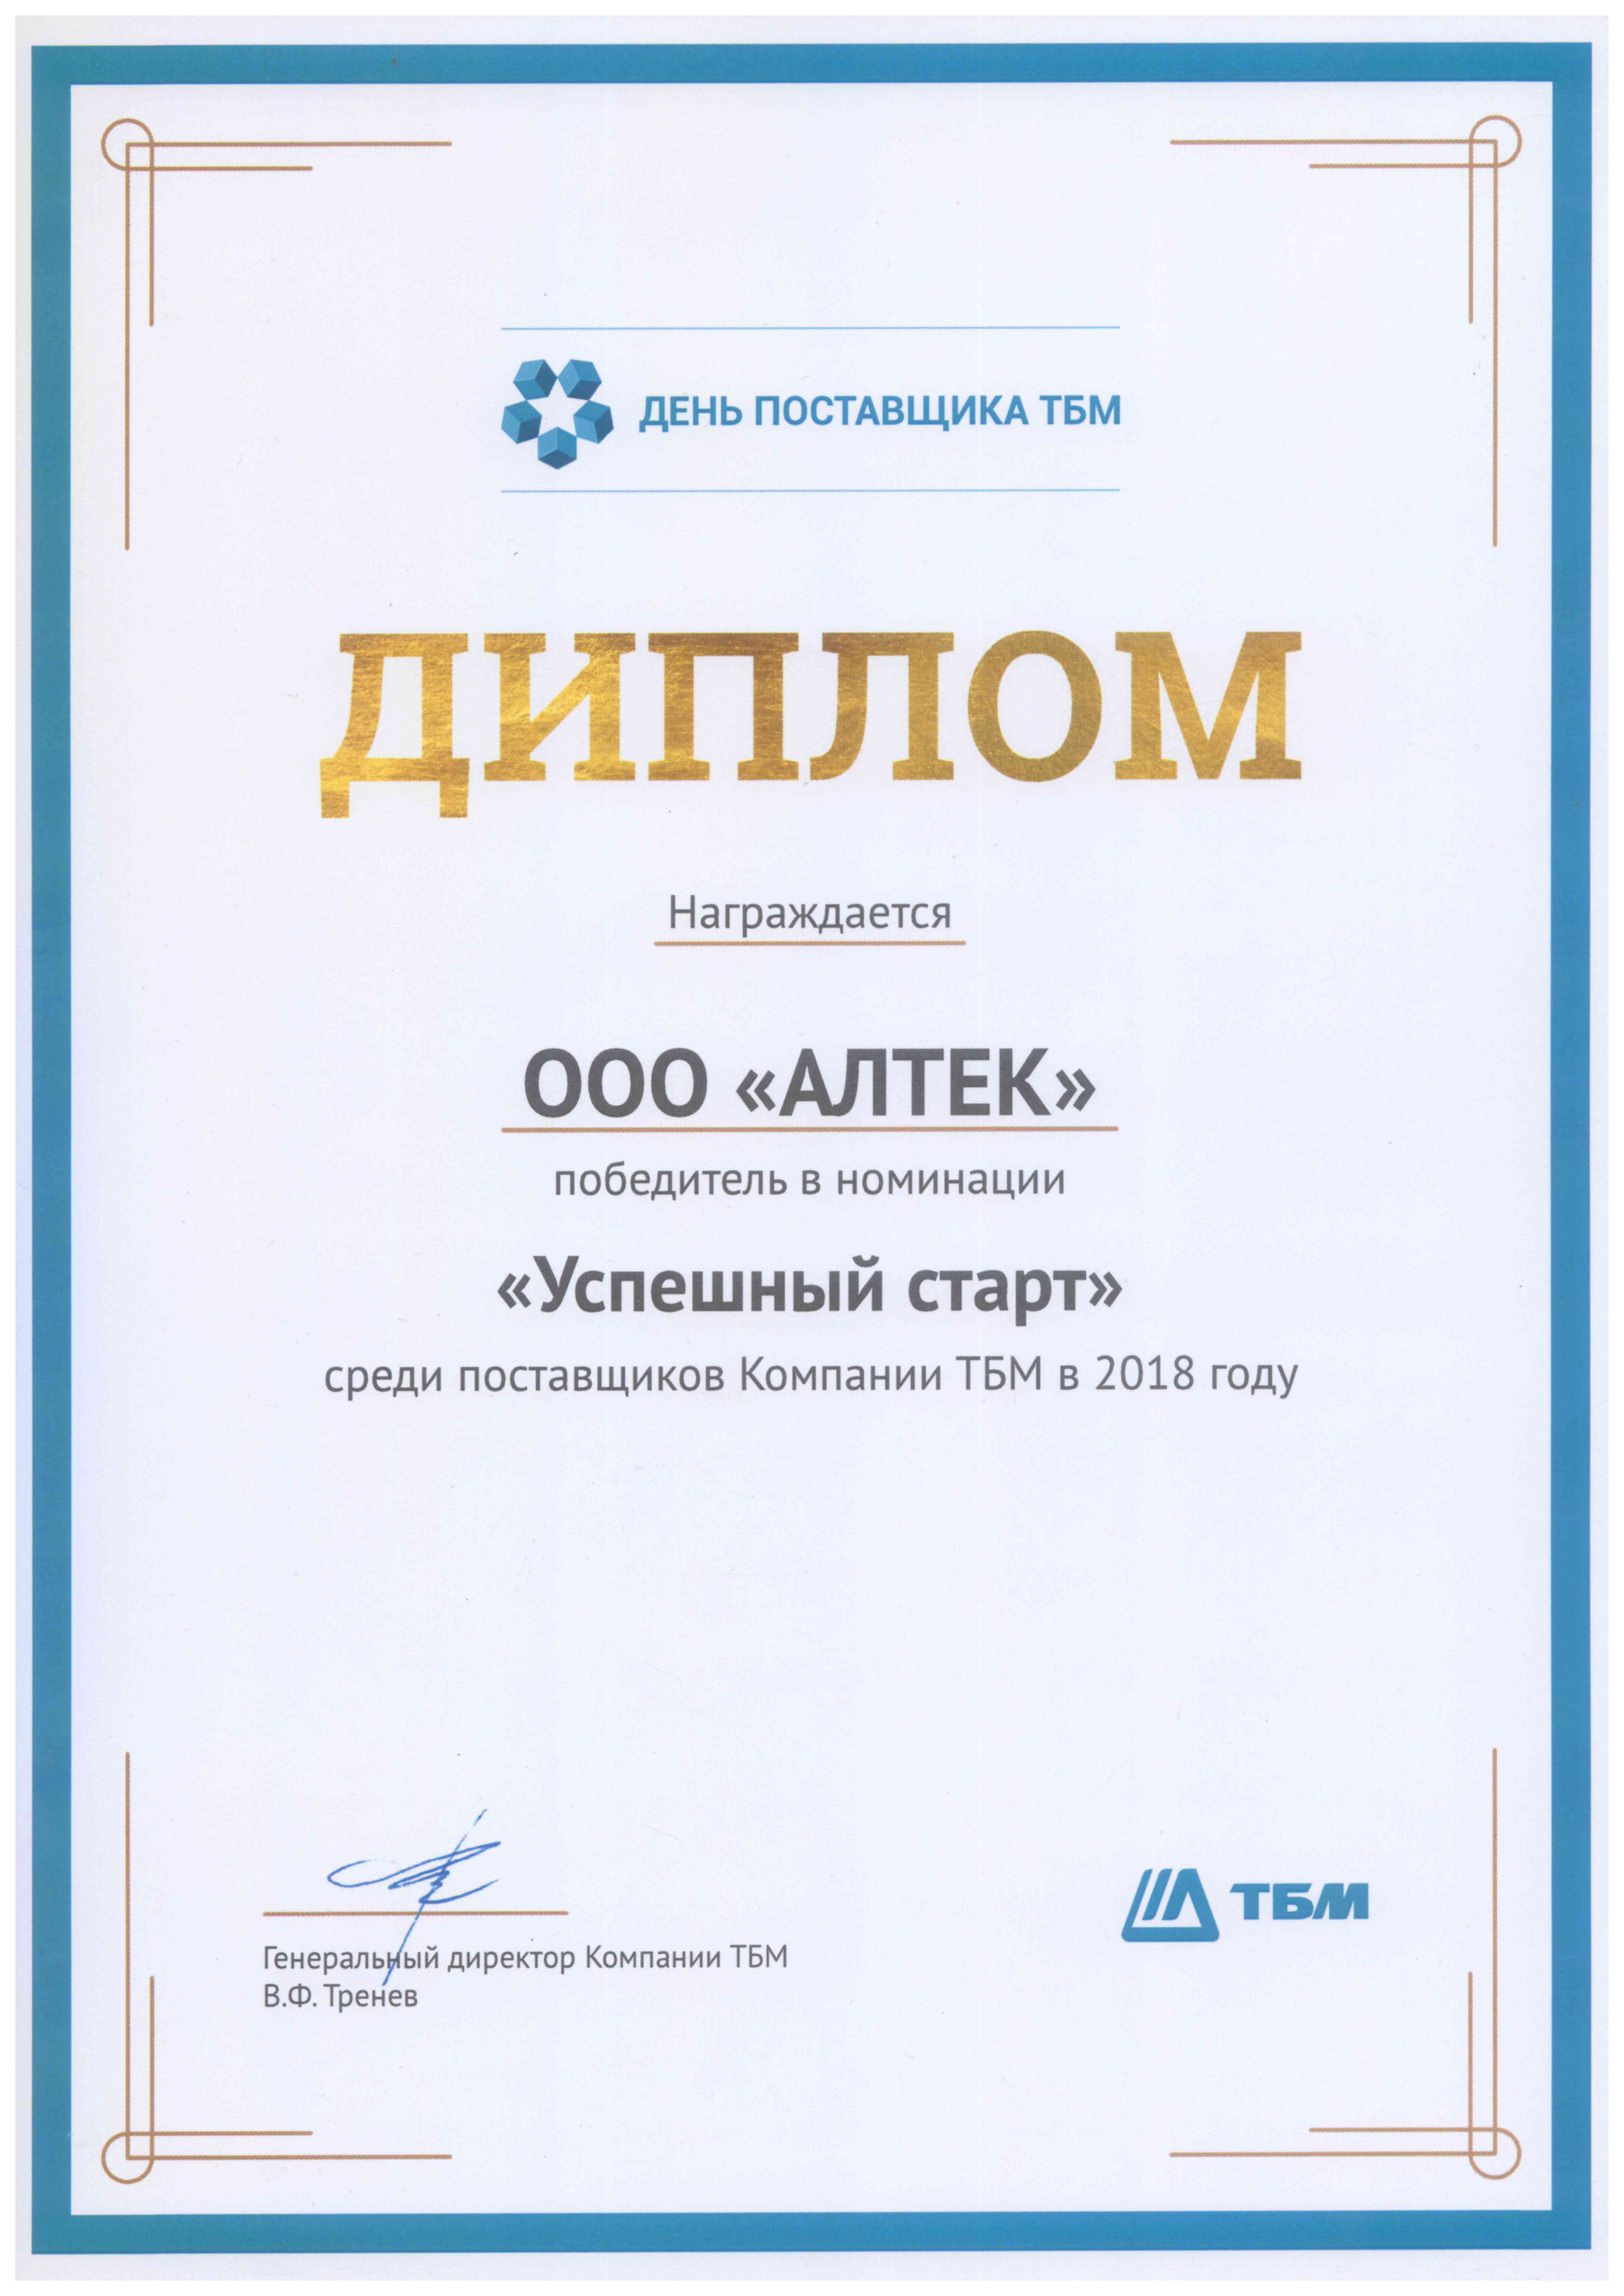 Gewinner bei der Nominierung "Erfolgreicher Start" unter den Lieferanten der TBM Company im Jahr 2018